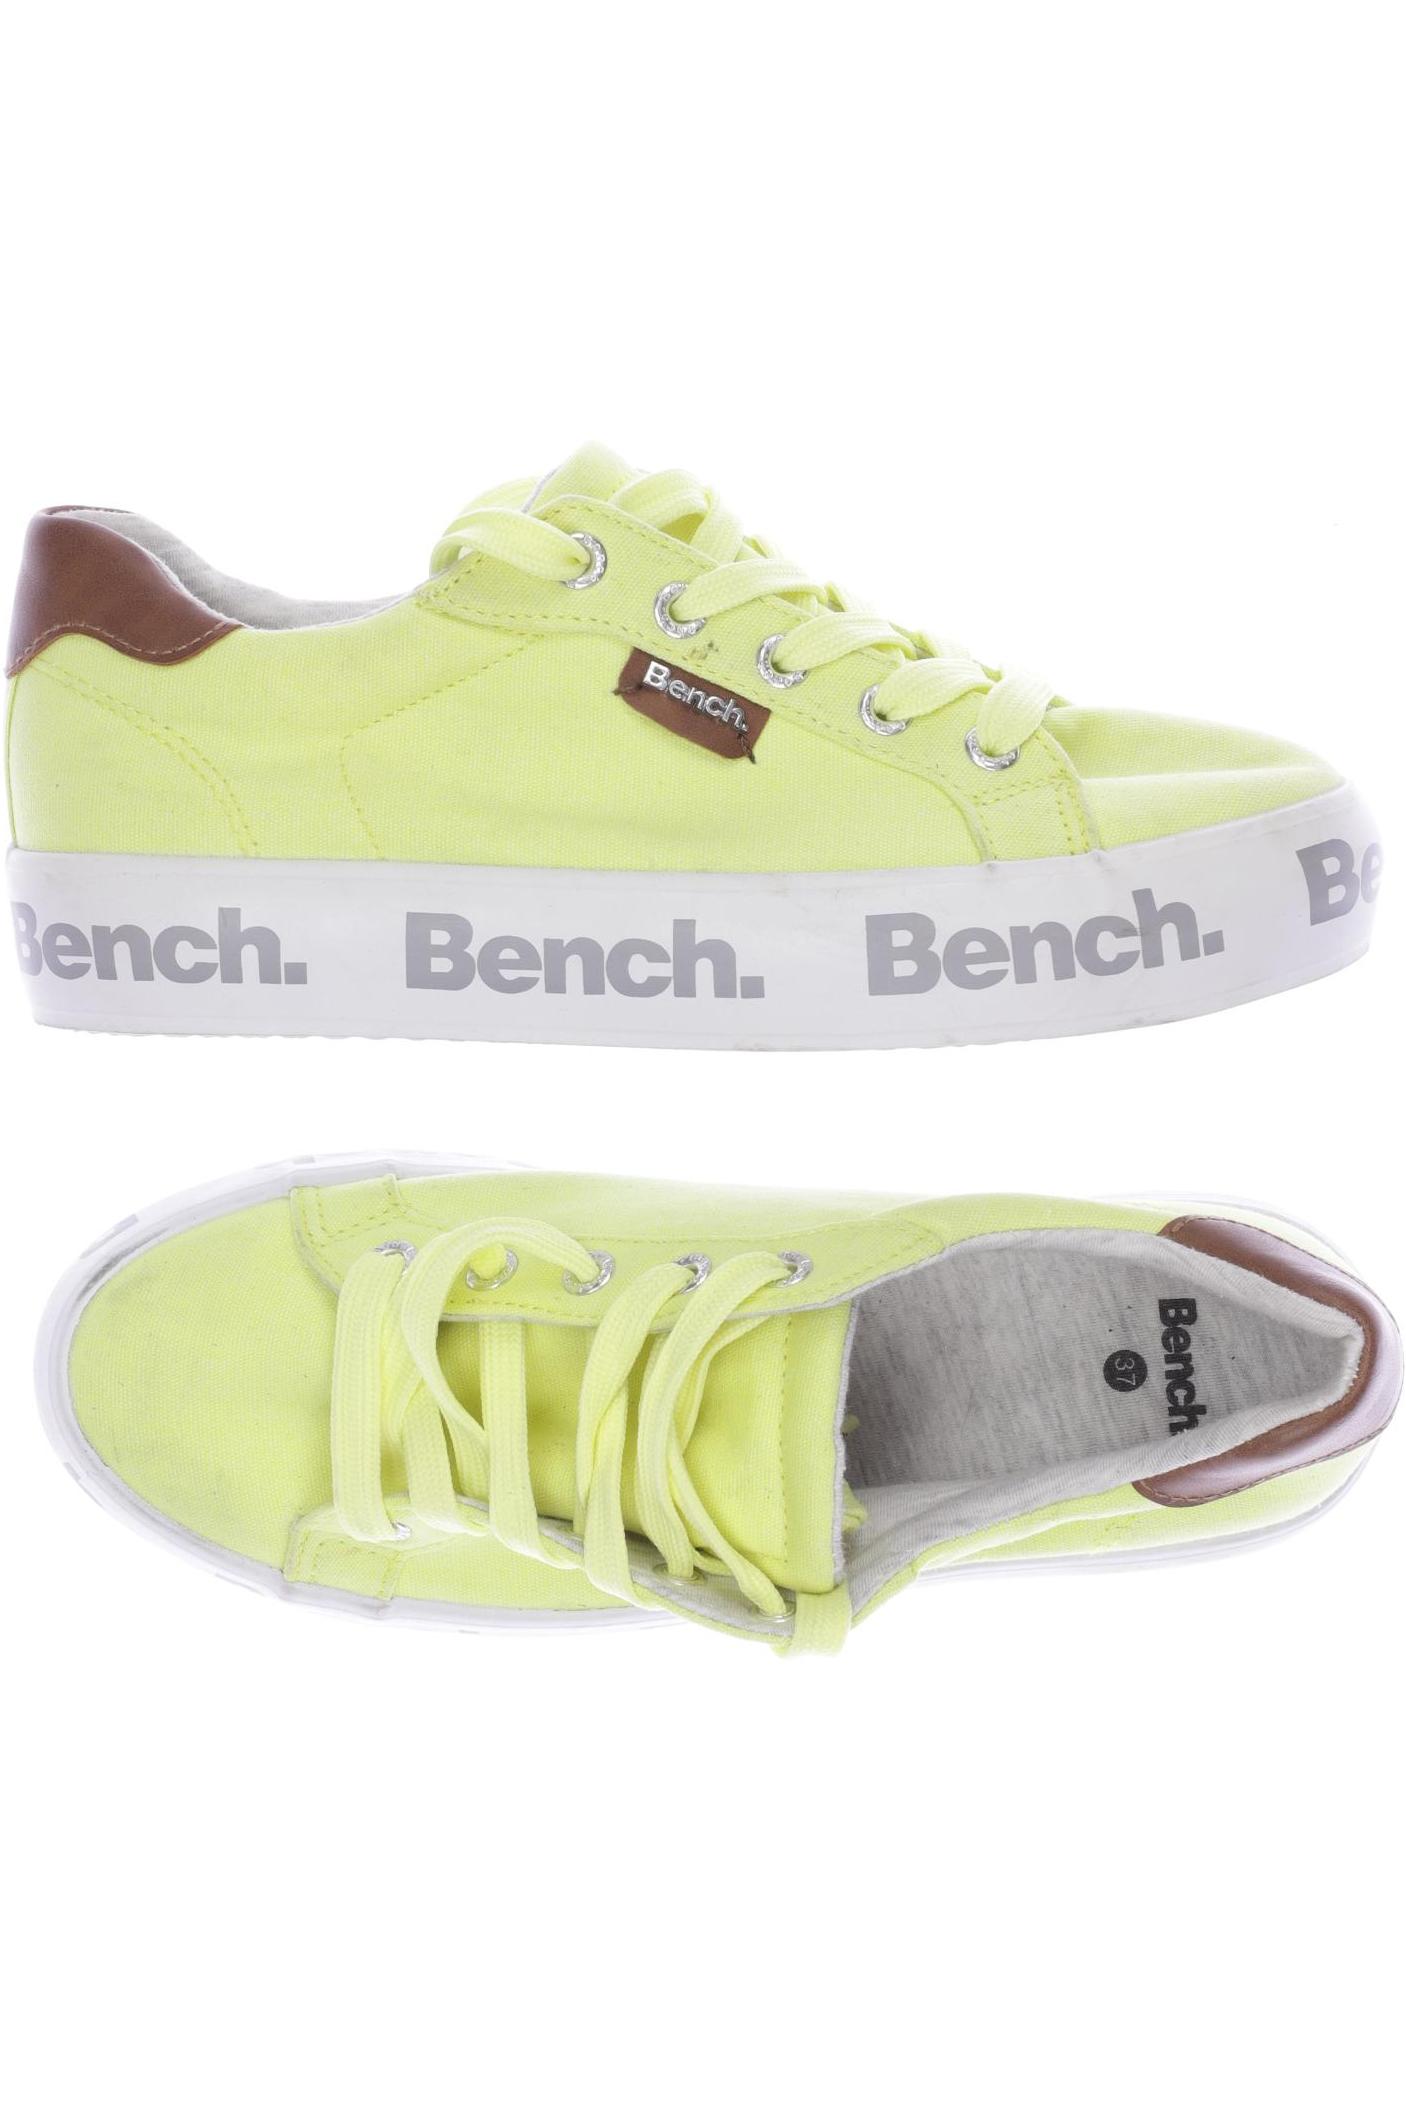 Bench. Damen Sneakers, gelb von Bench.